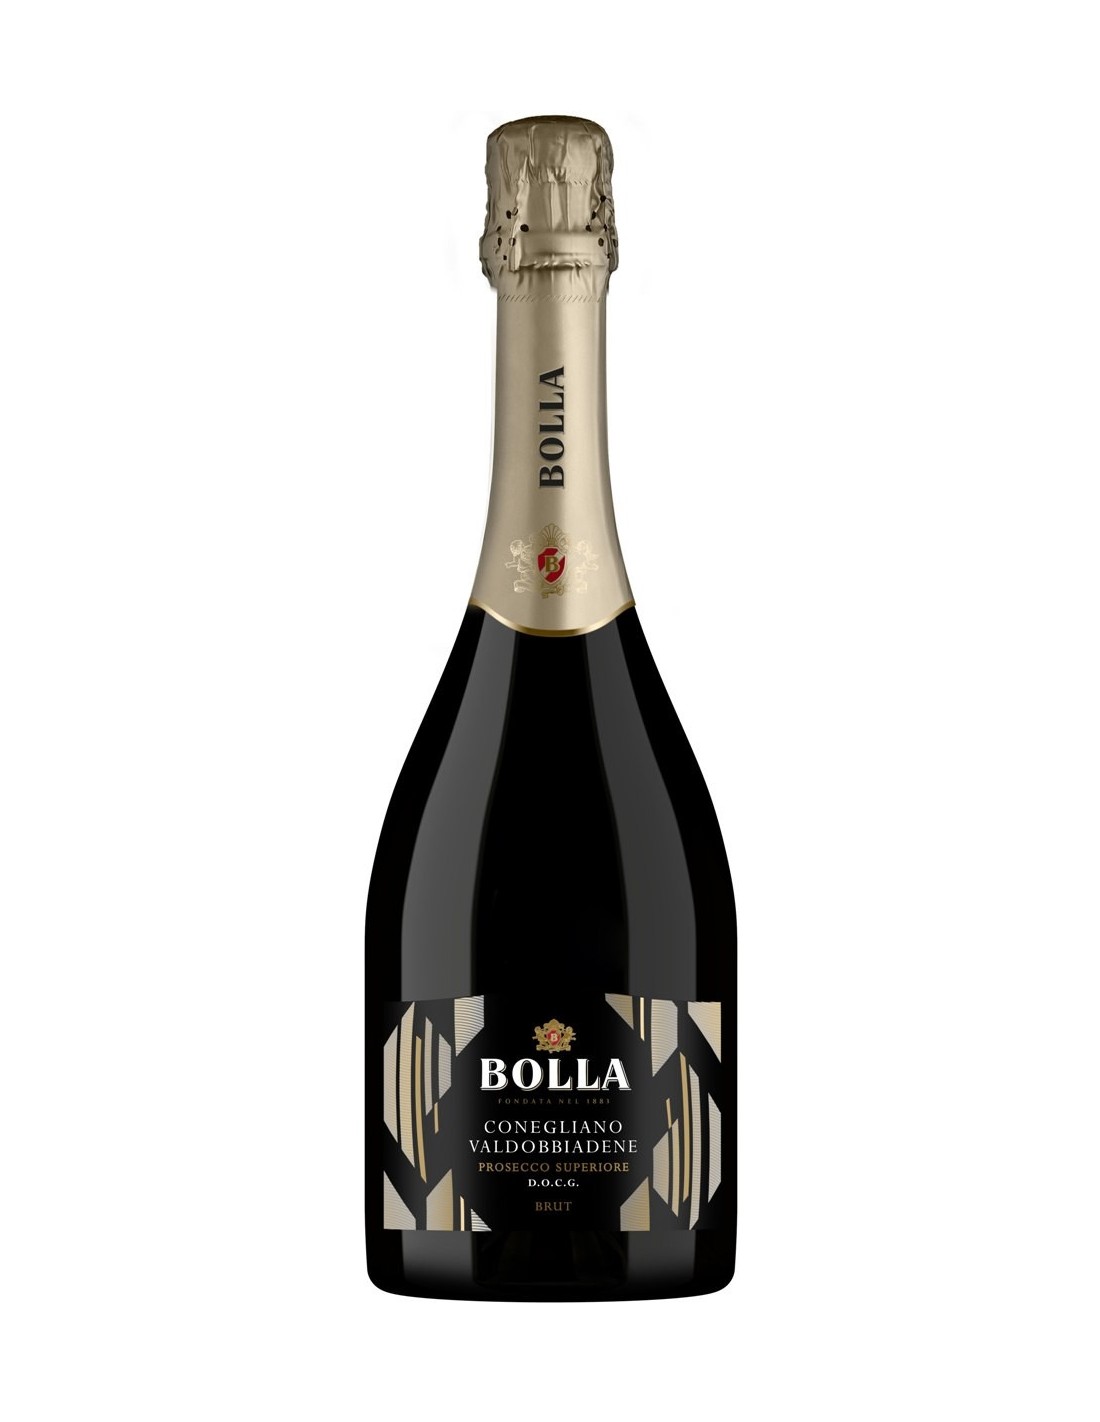 Vin prosecco alb, Glera, Bolla Conegliano-Valdobbiadene, 0.75L, 11% alc., Italia alcooldiscount.ro